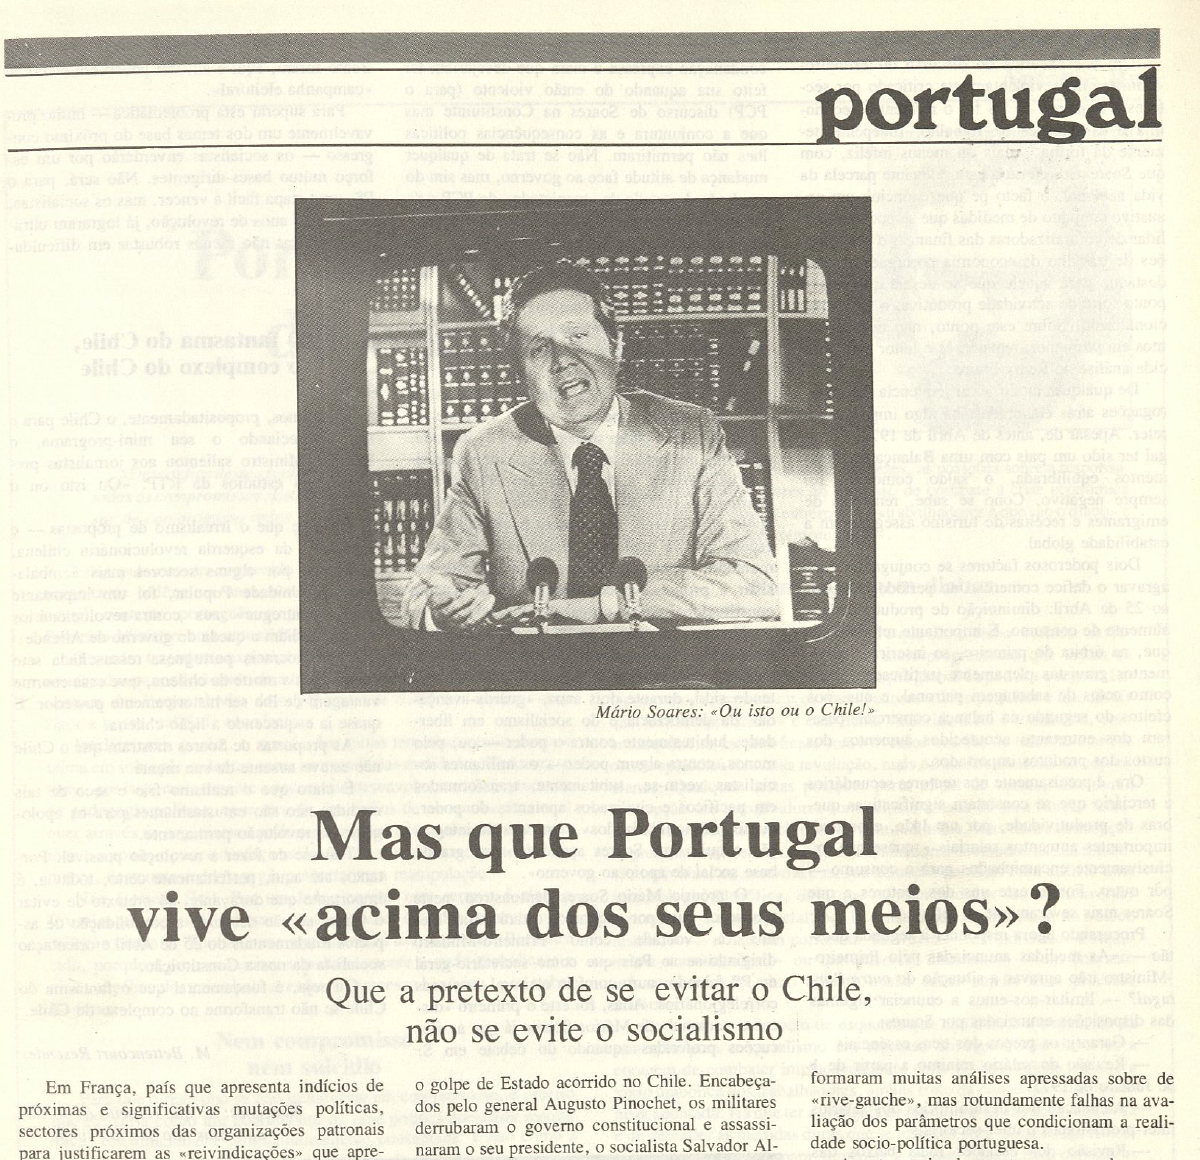 "Mas que portugal vive acima dos seus meios"